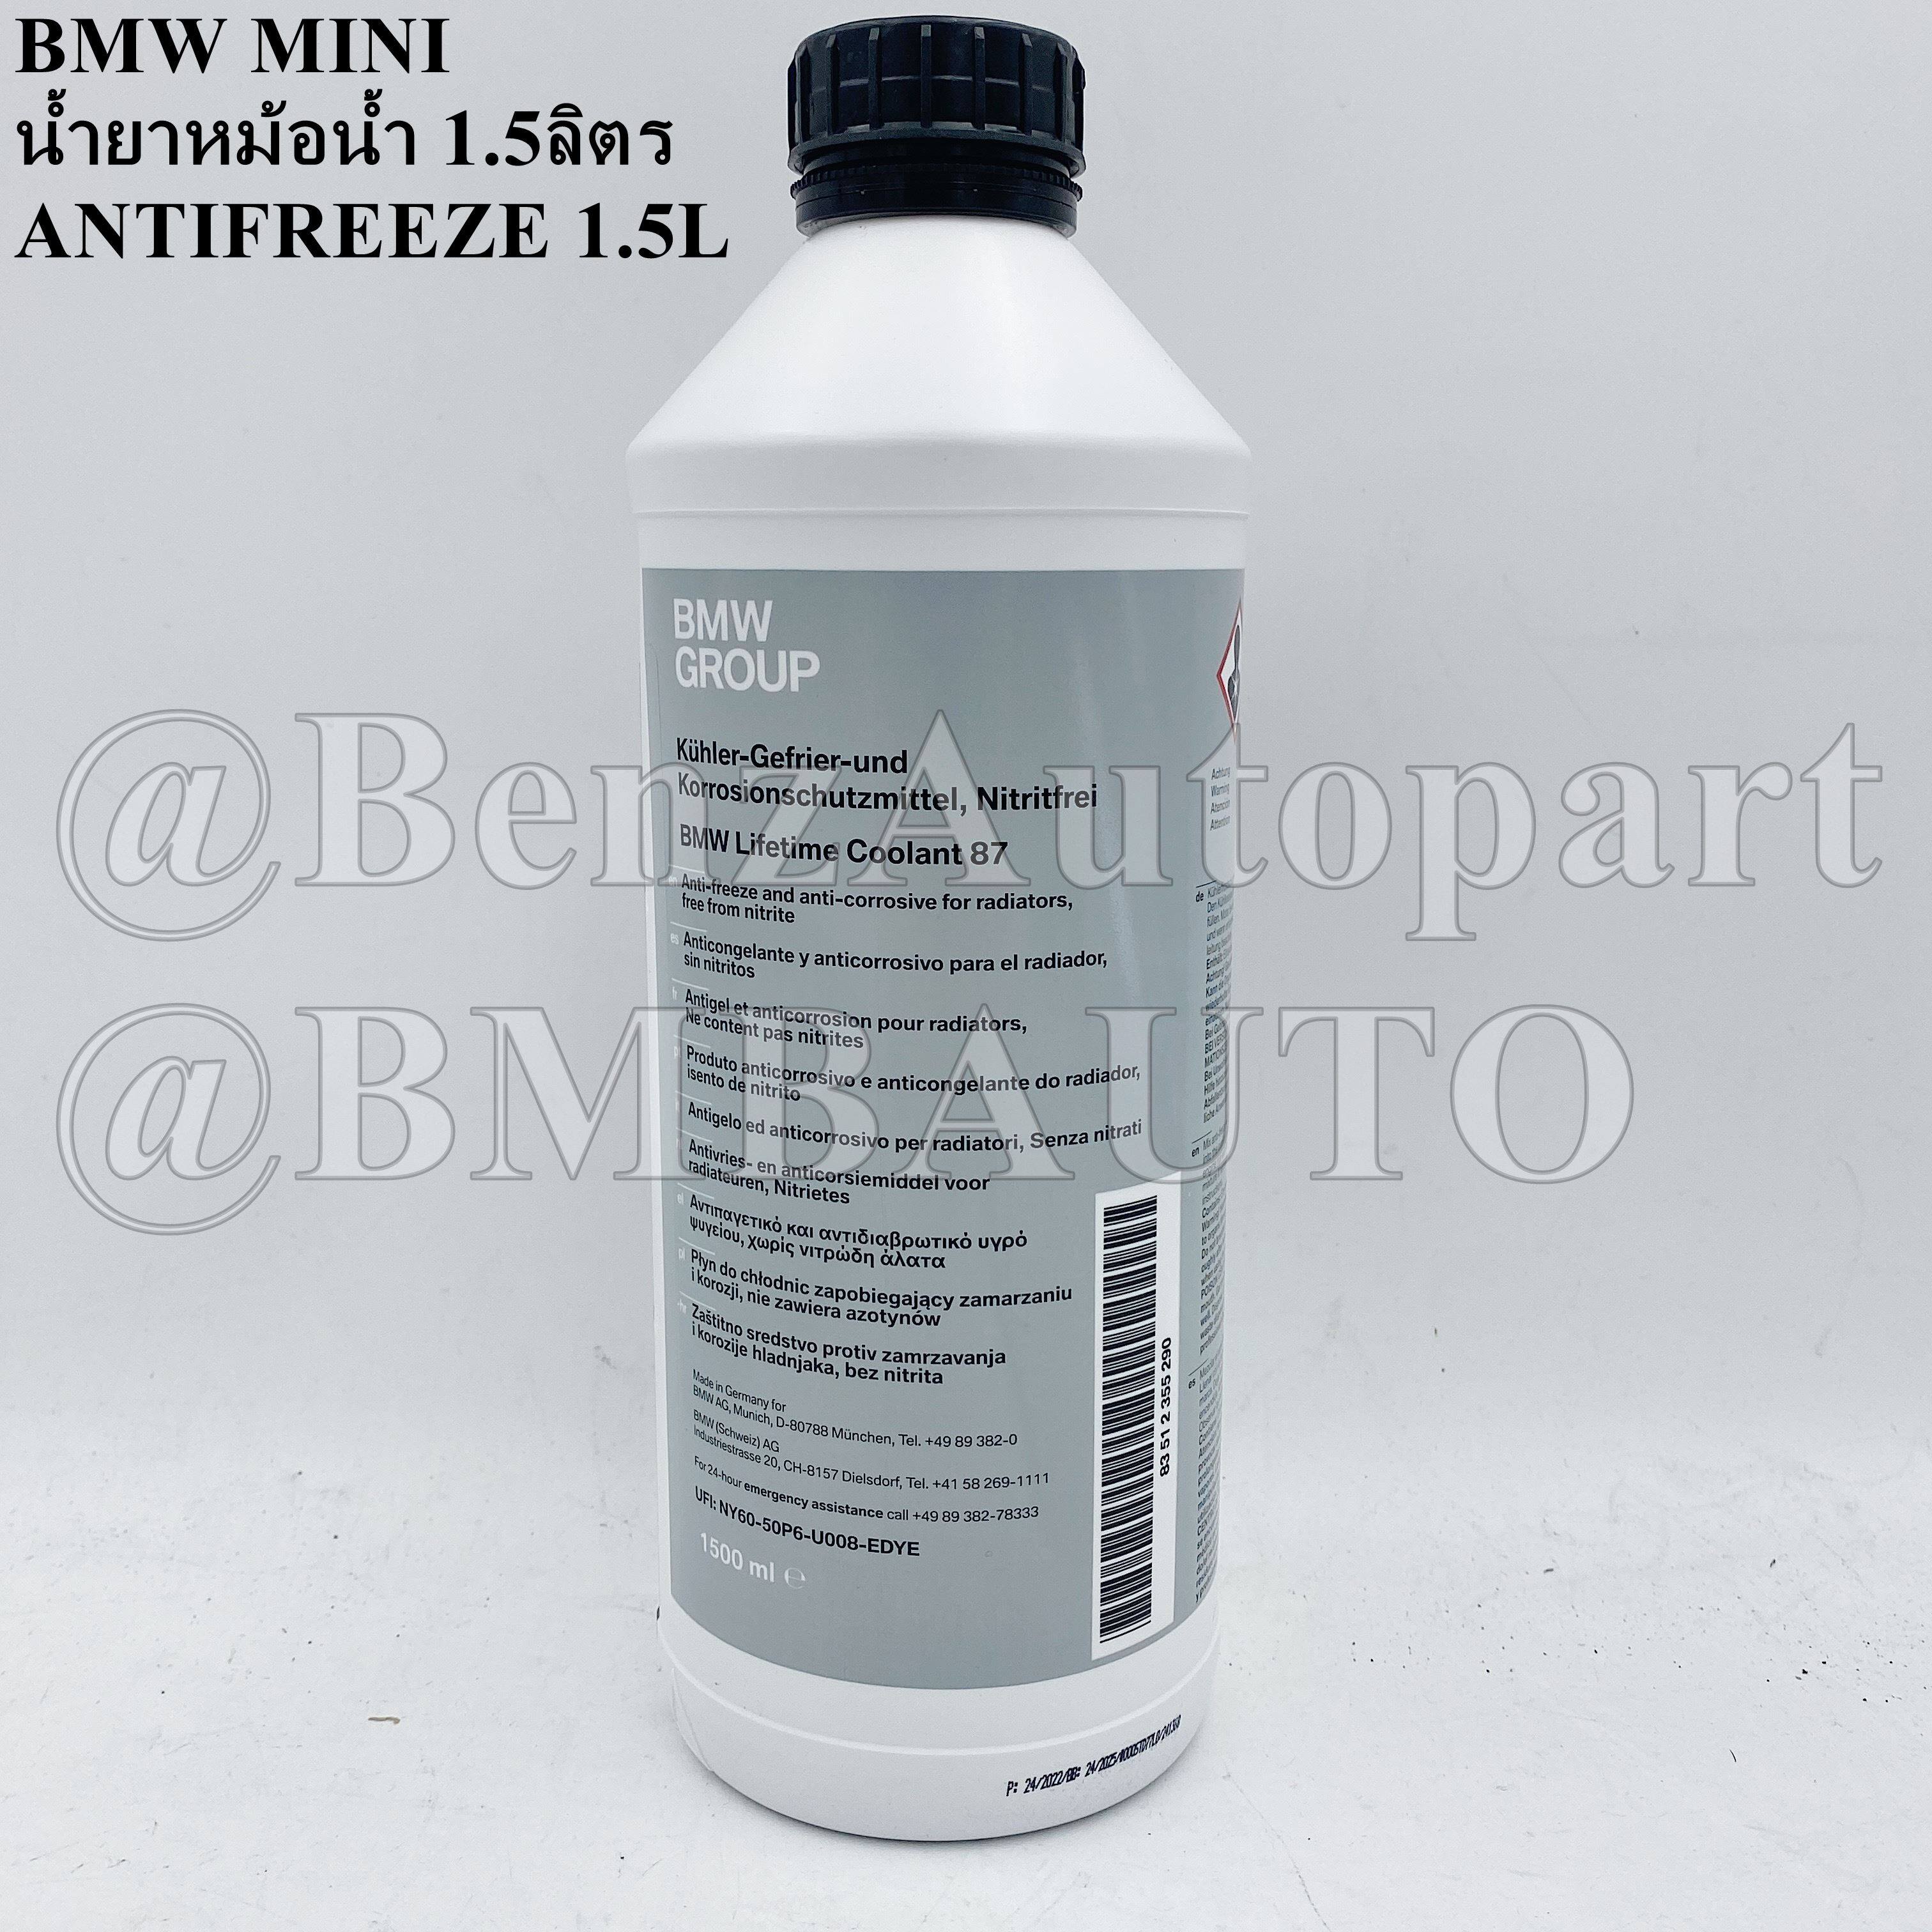 BENZ AdBlue BASF ขนาด 10 ลิตร สำหรับ BENZ BMW AUDI เครื่อง ดีเซล ทุกรุ่น  ผลิตภัณฑ์ น้ำยาปรับสภาพ แอดบลู น้ำยาแอดบลู